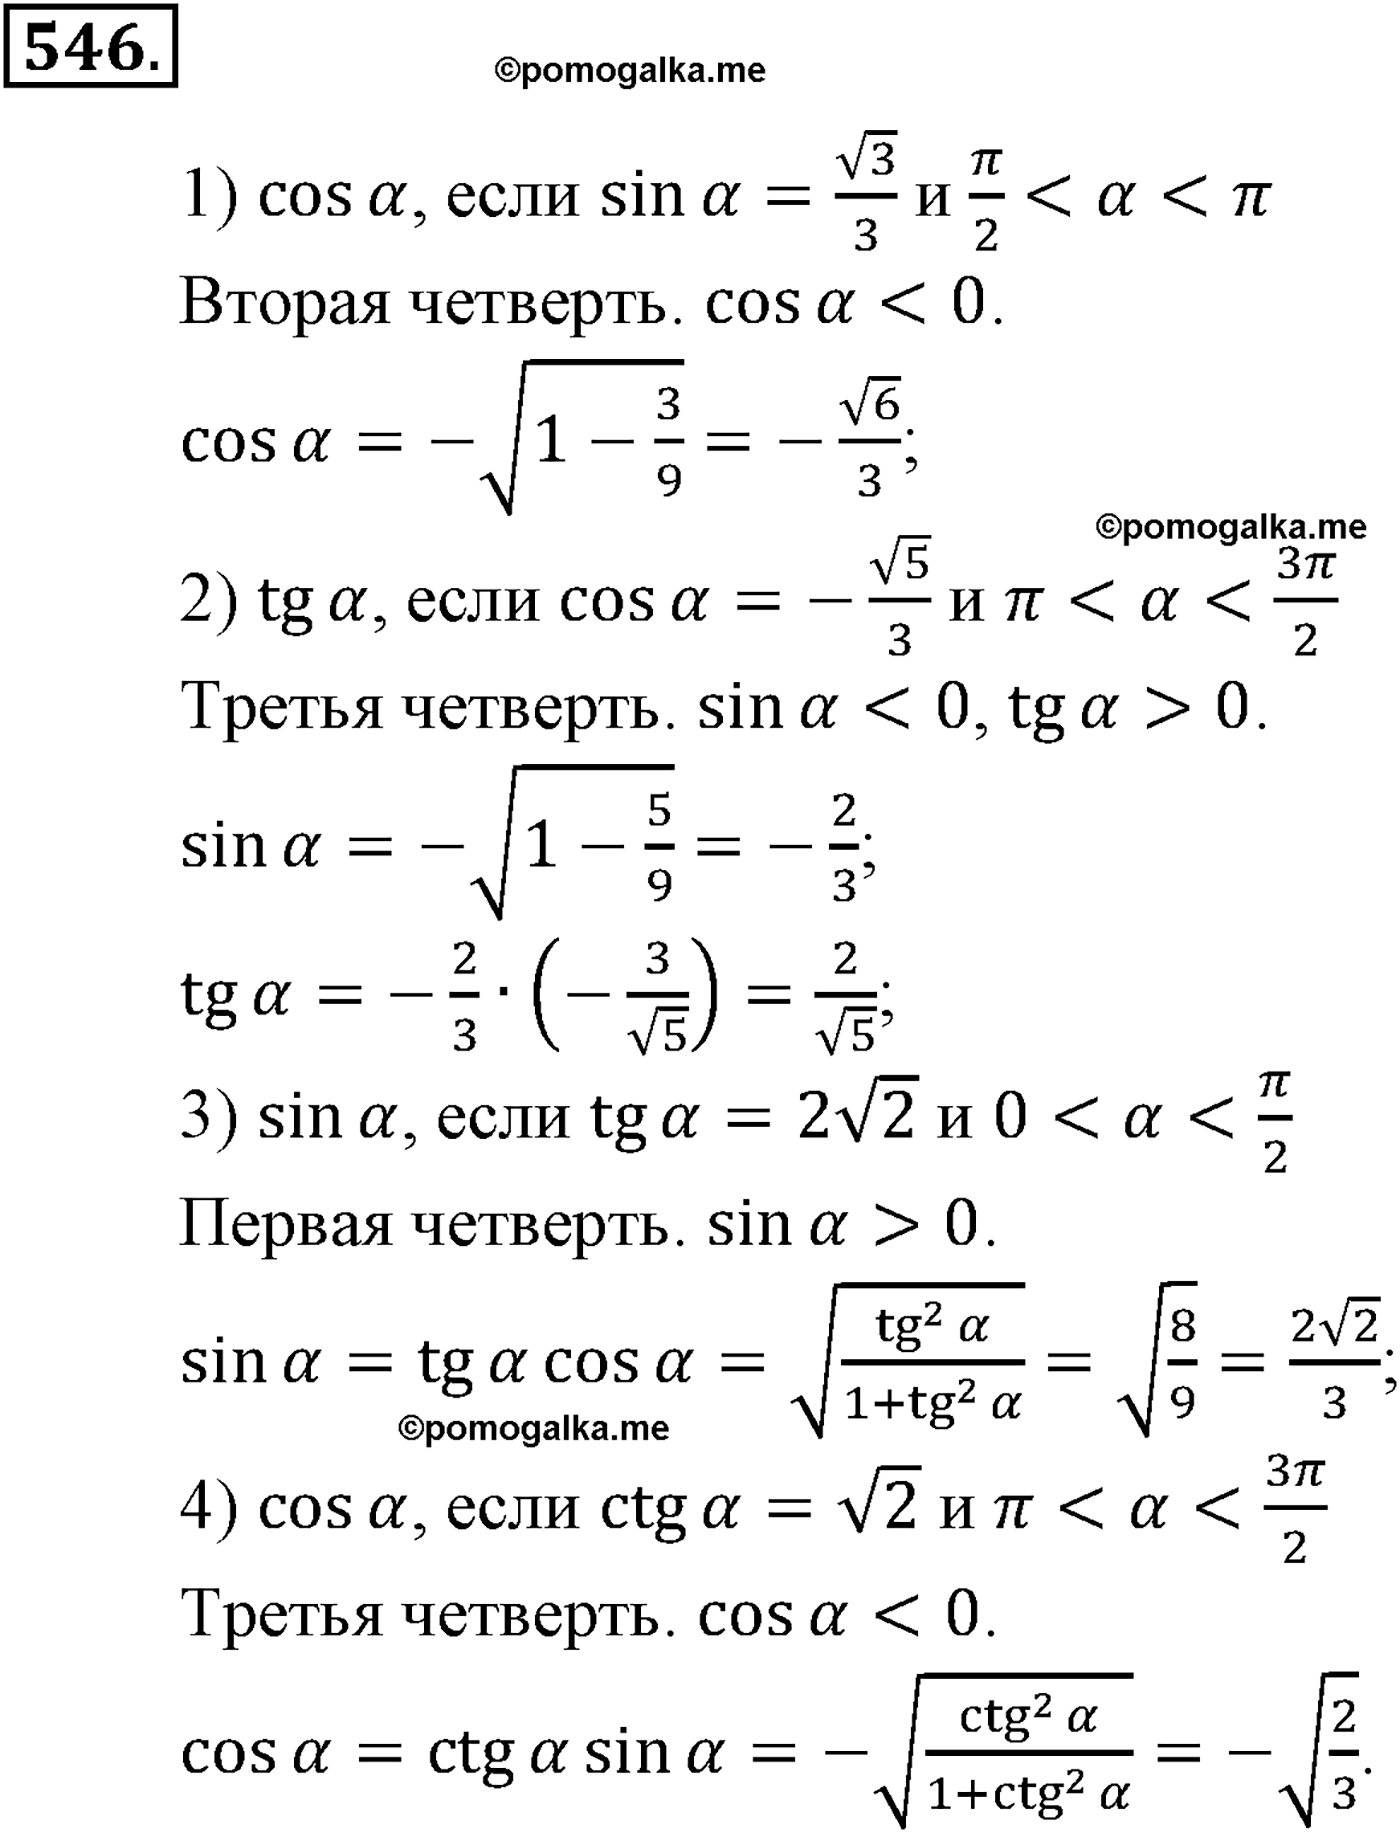 разбор задачи №546 по алгебре за 10-11 класс из учебника Алимова, Колягина